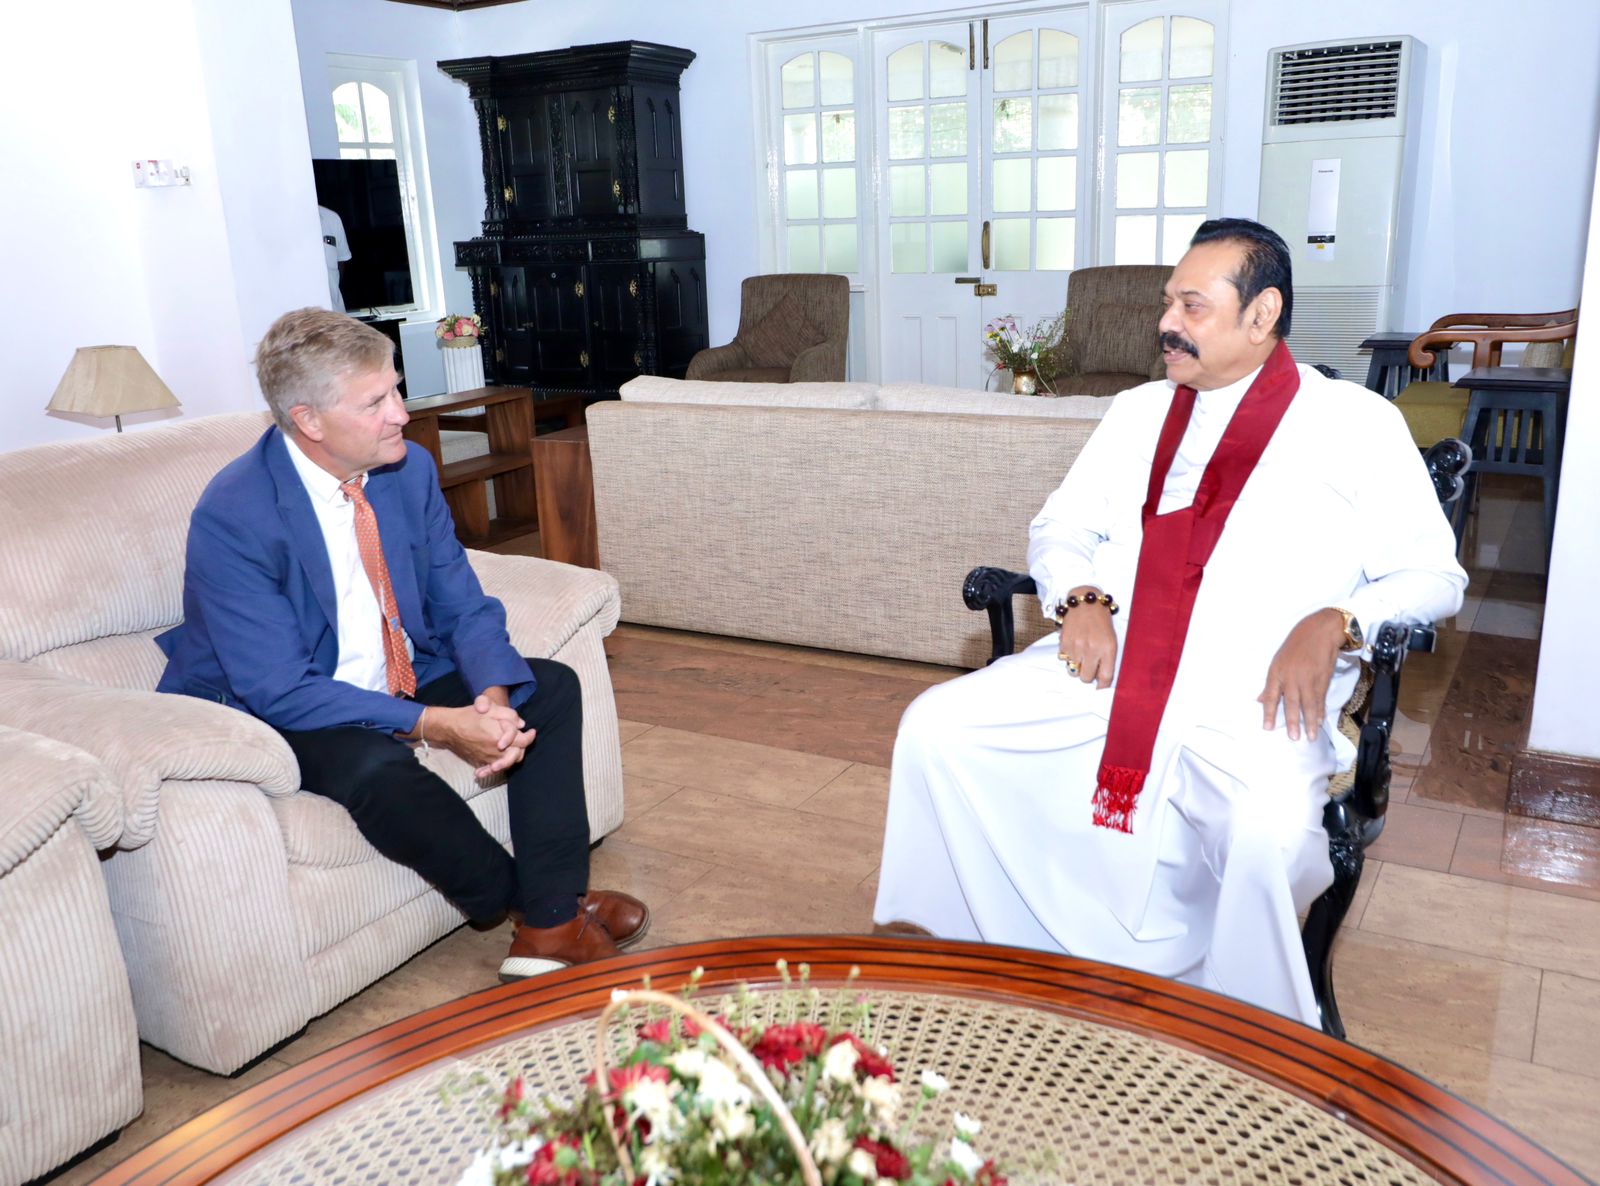 Erik Solheim meets Former President Mahinda Rajapaksa